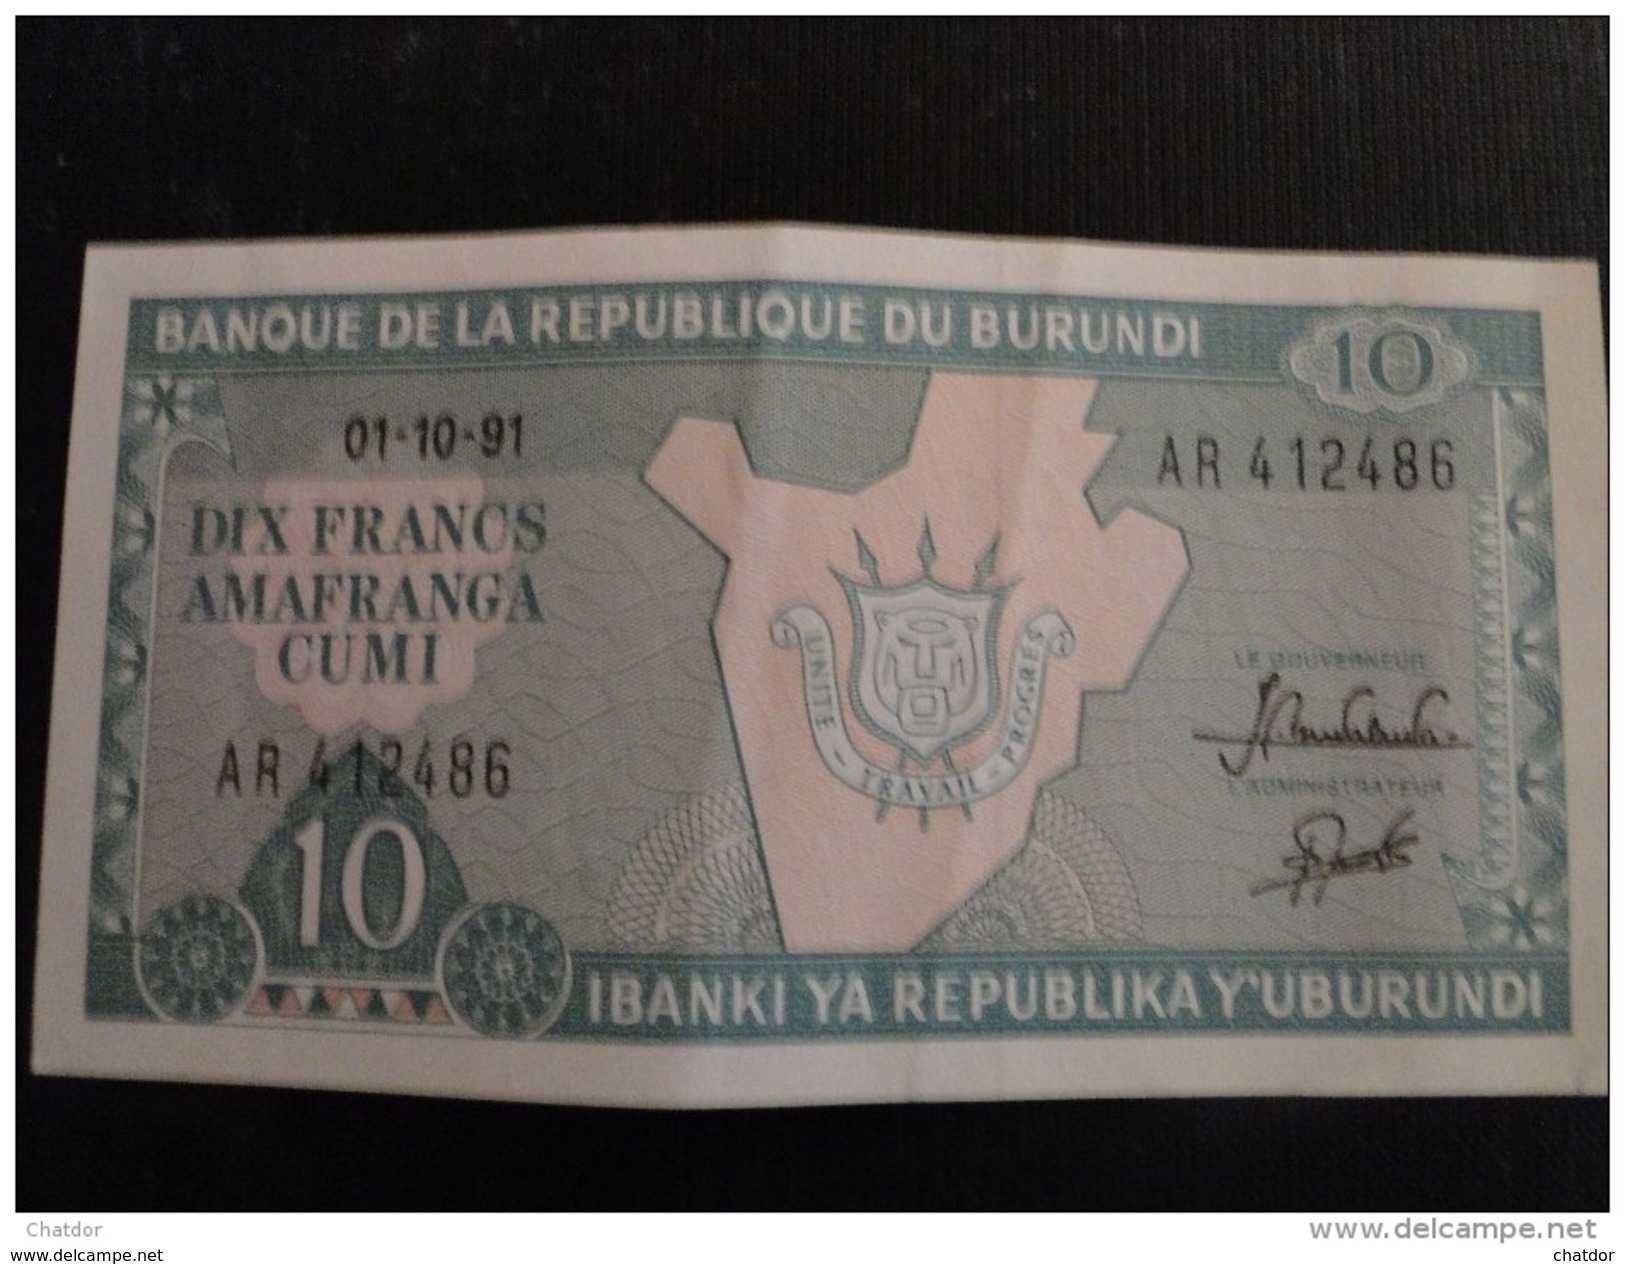 Burundi : Billet De 10 Franc 1991 - Burundi